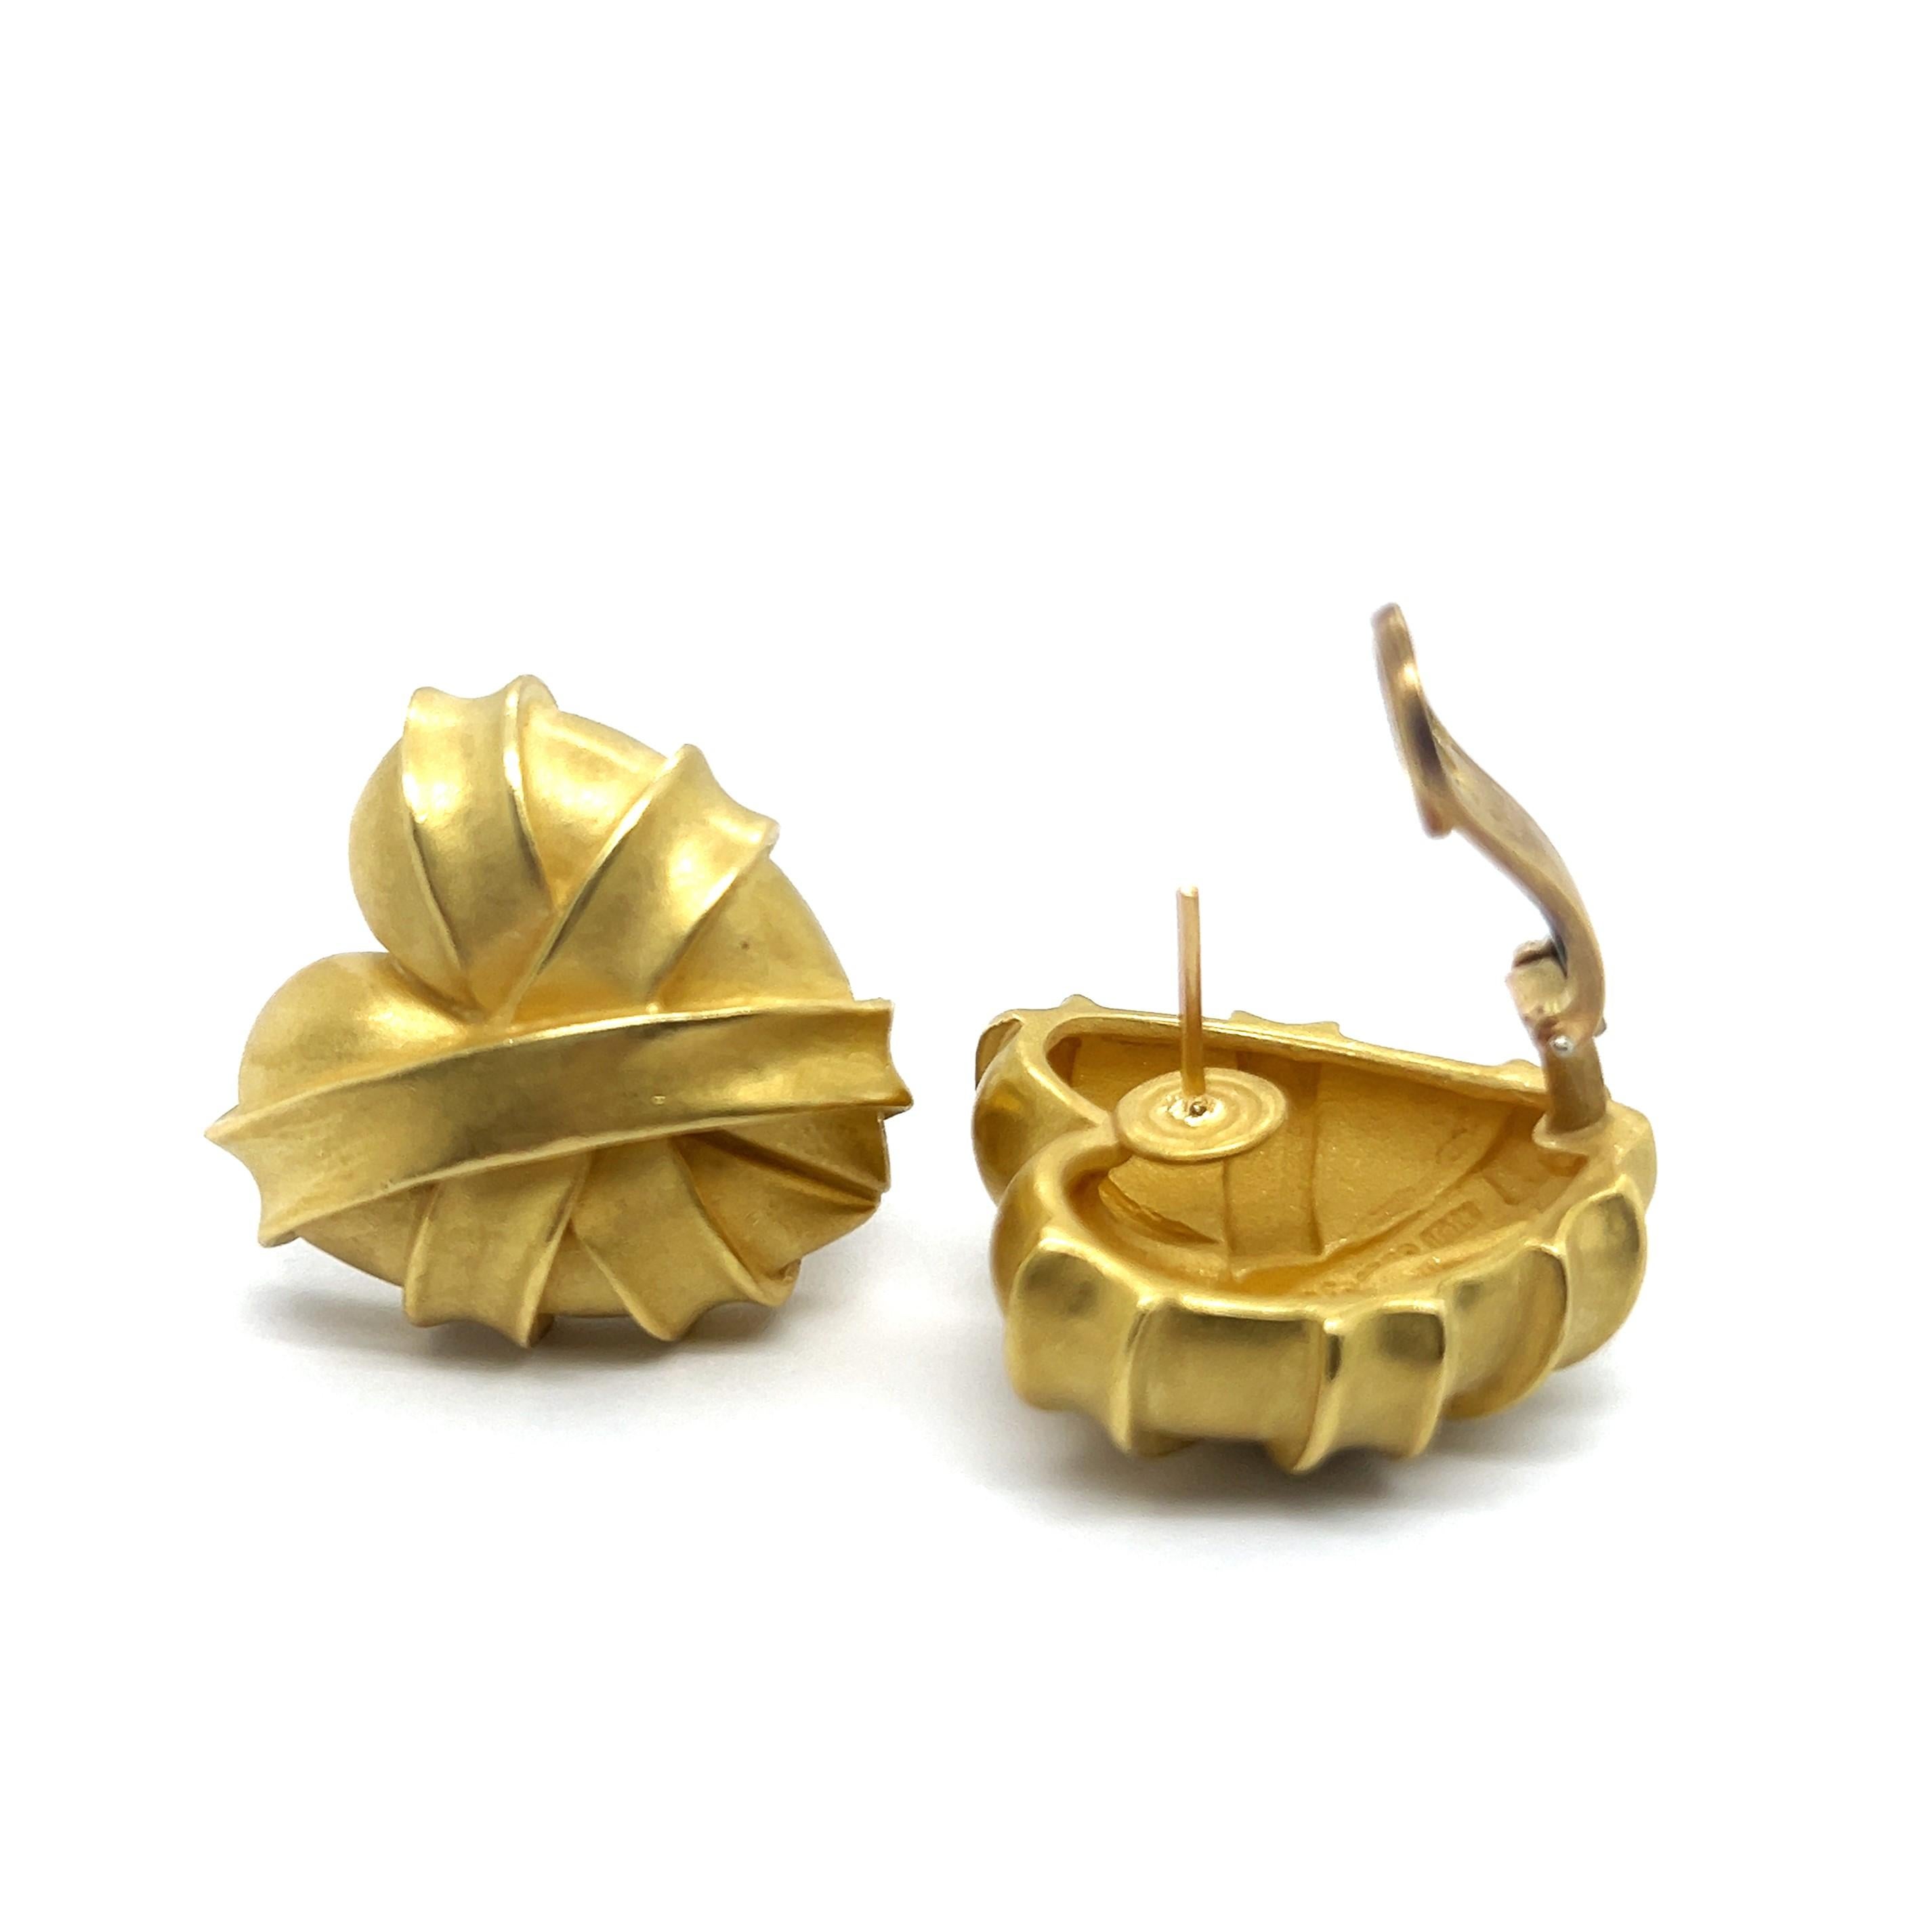 Heart-shaped Earrings in 18 Karat Yellow Gold by Kieselstein-Cord For Sale 6